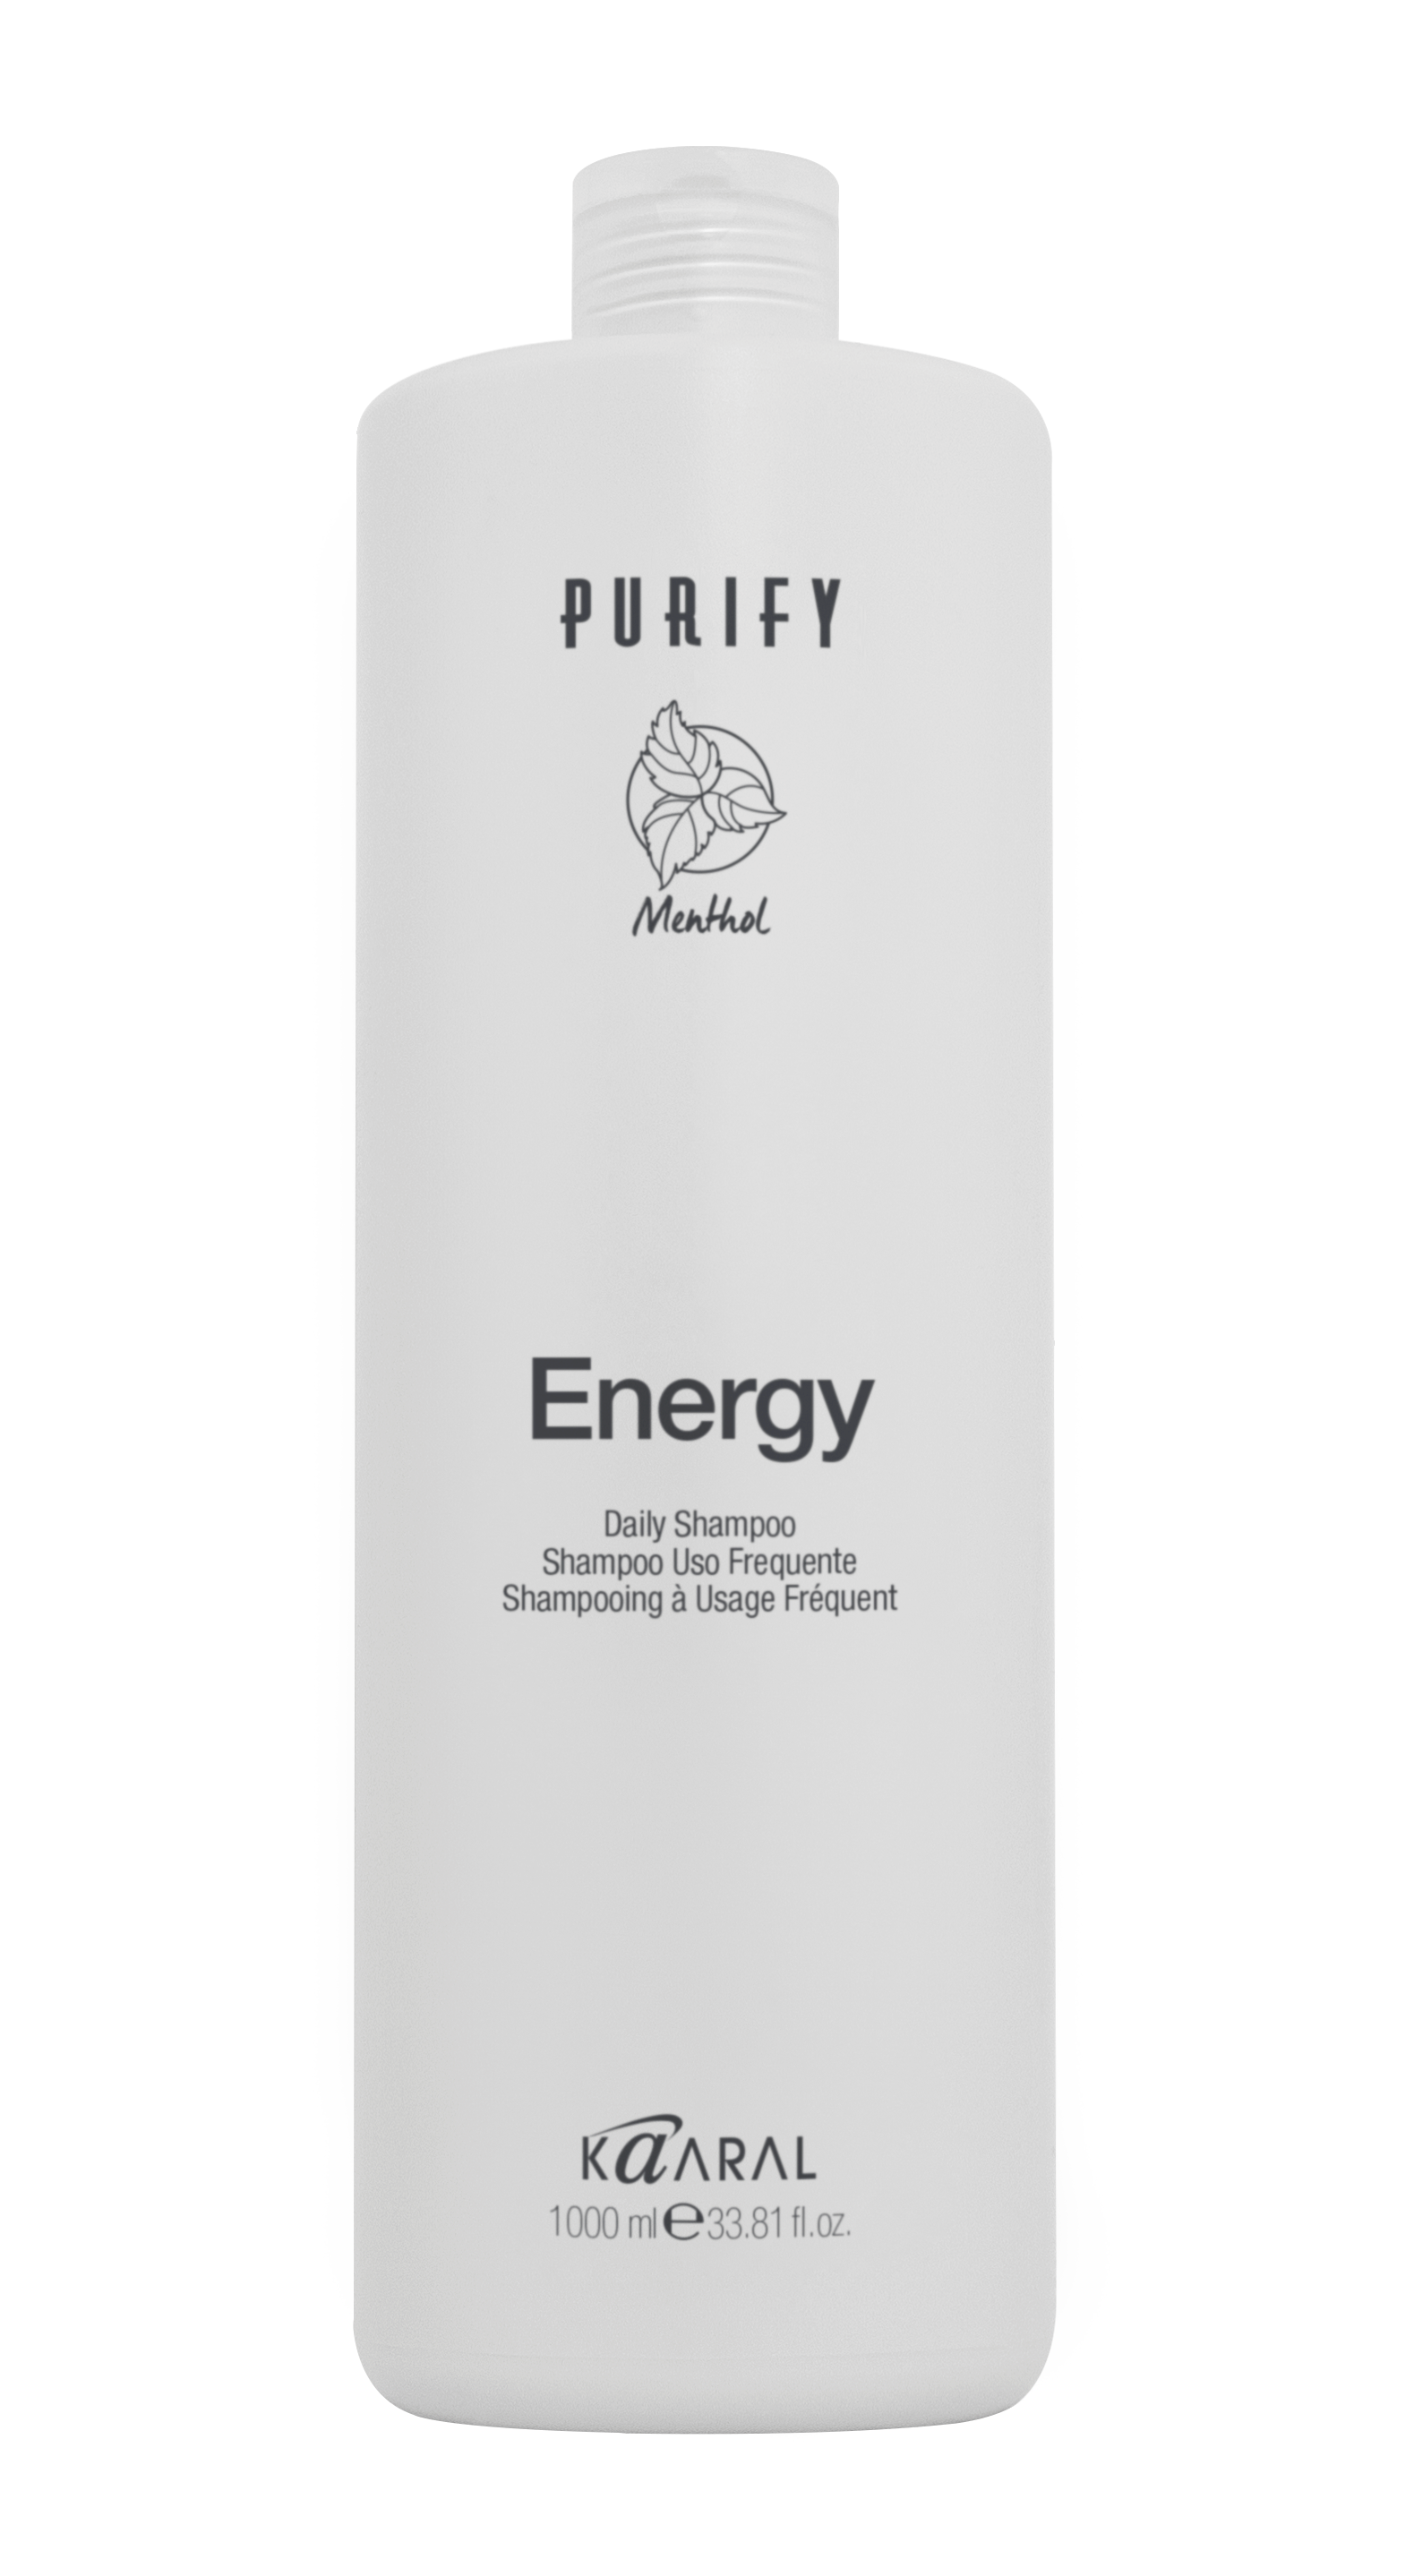 PURIFY Energy Shampoo by KAARAL